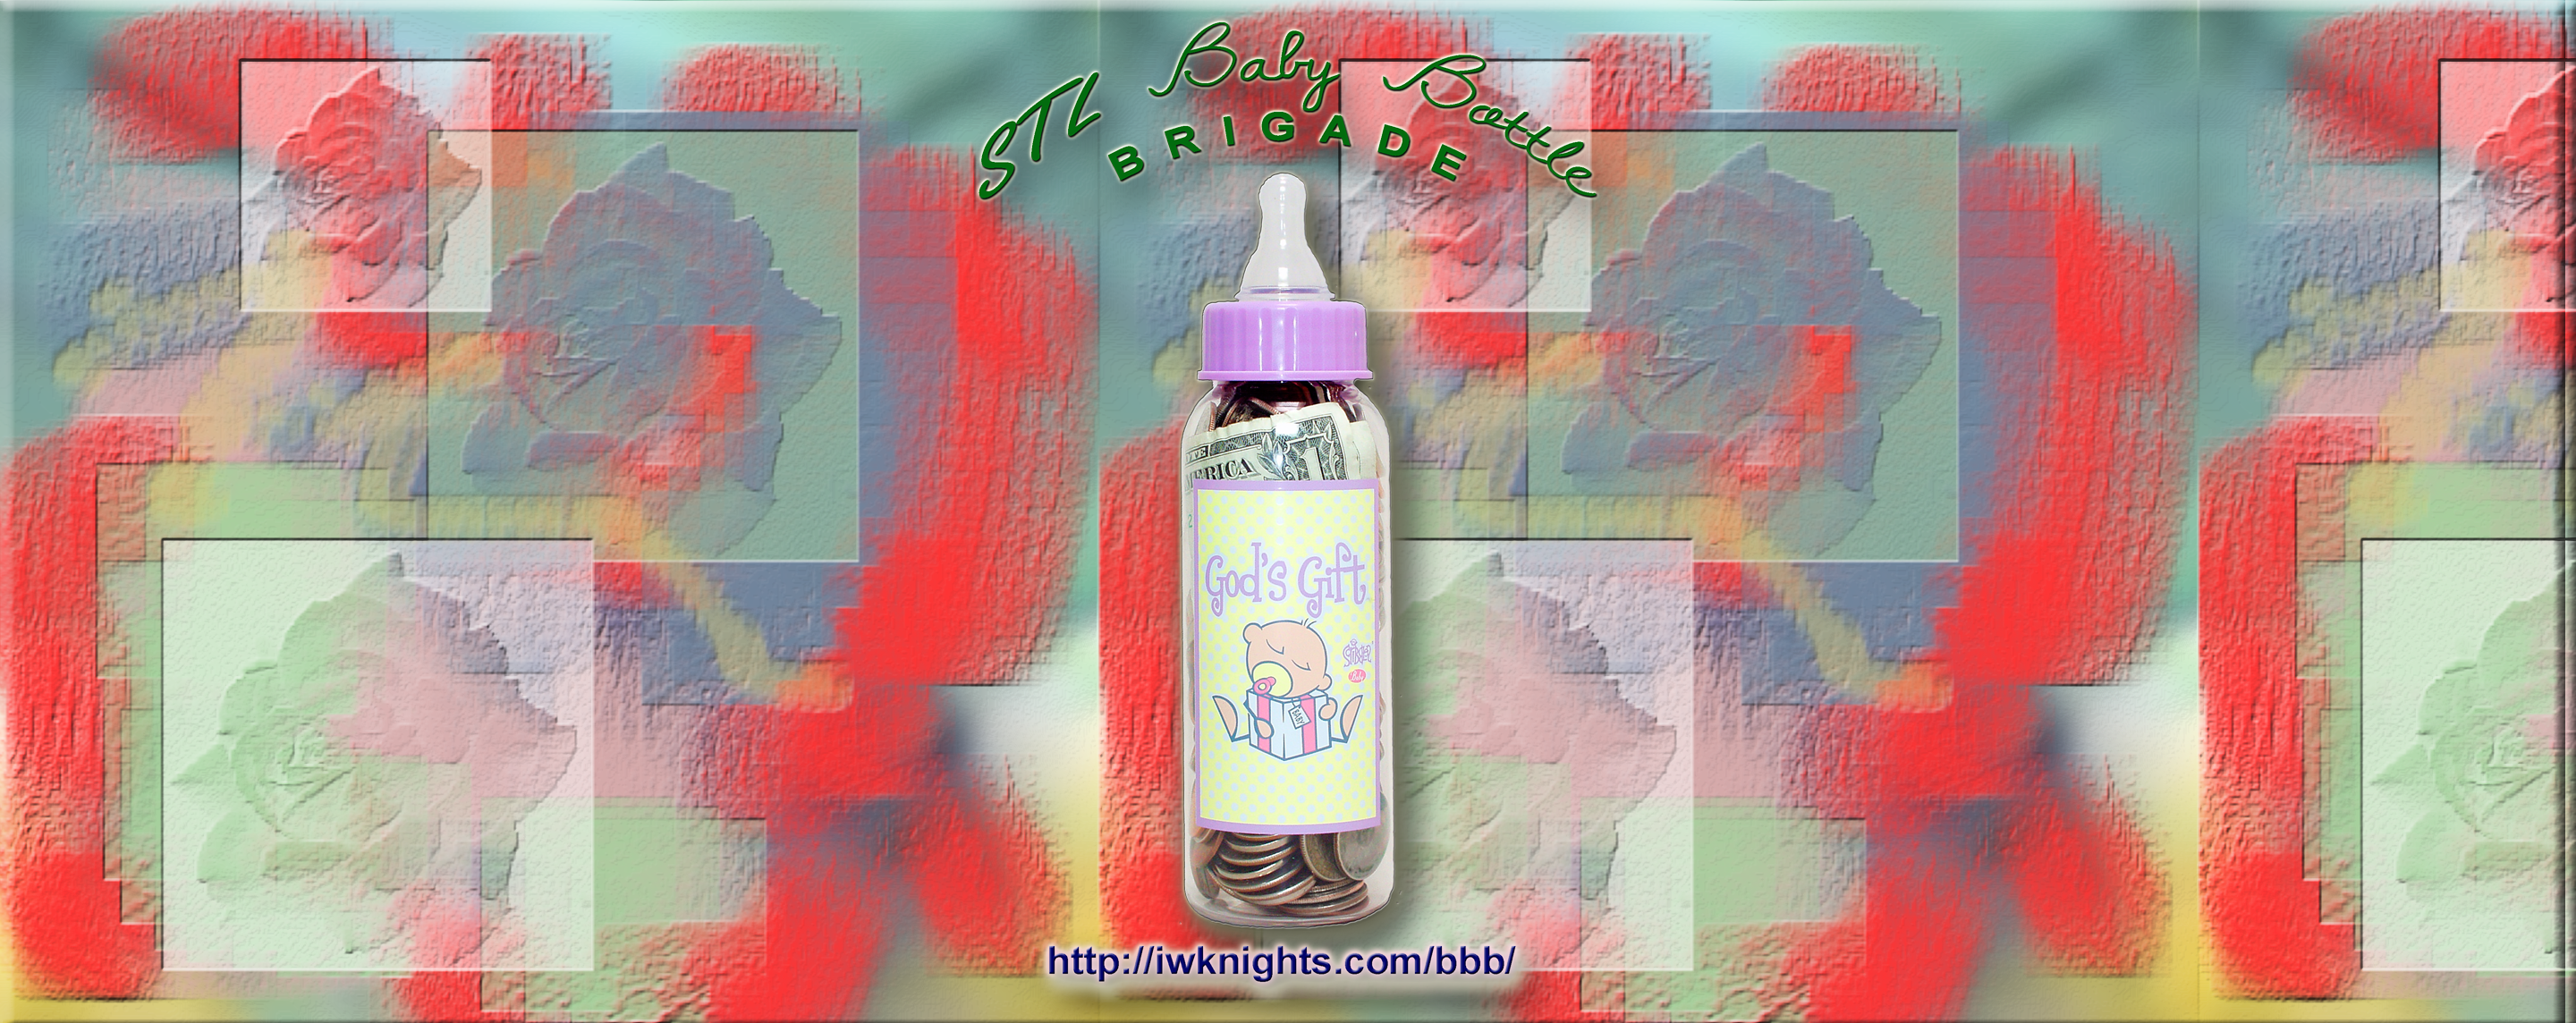 STL Baby Bottle Brigade Online Store Header 1